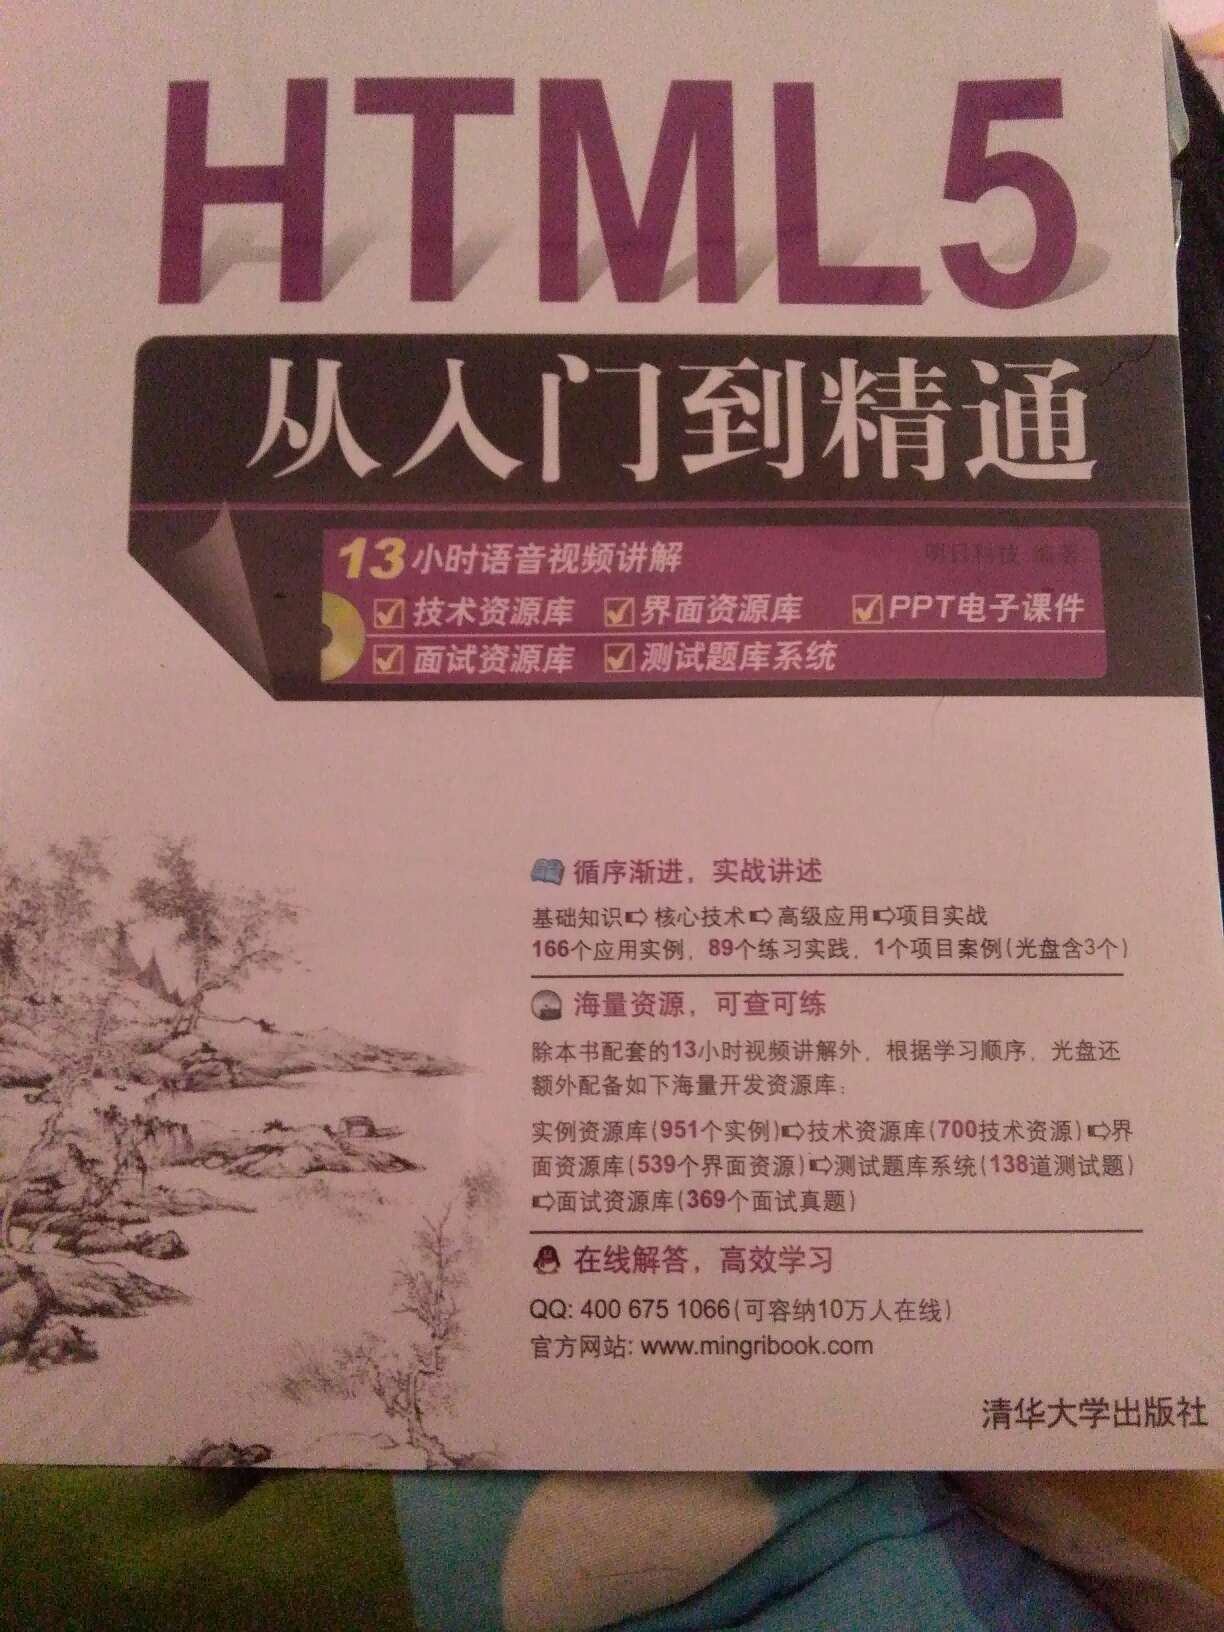 刚刚接触HTML5，买的这本书，应该很管用的。